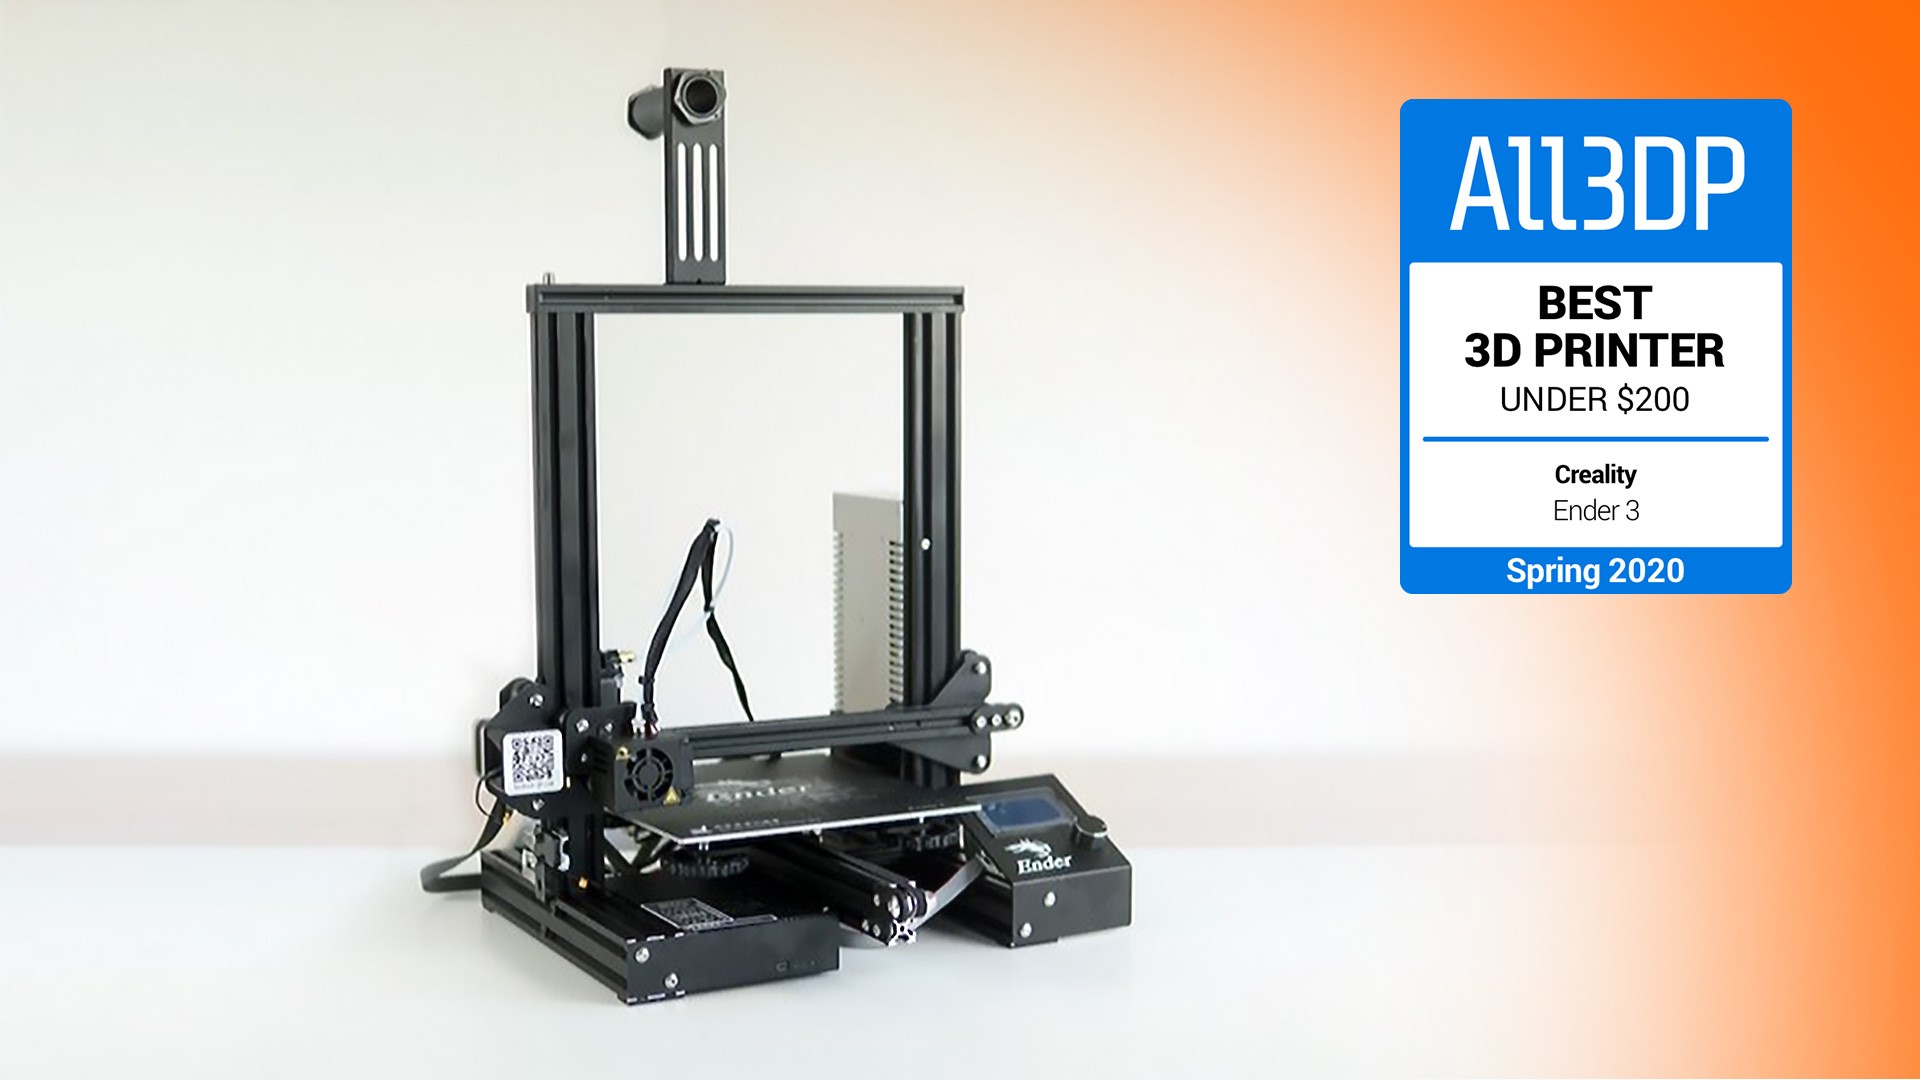 impresoras y scanners - ComgrowCreality Ender 3 Impresora 3D de aluminio con reanudación de impresión 7